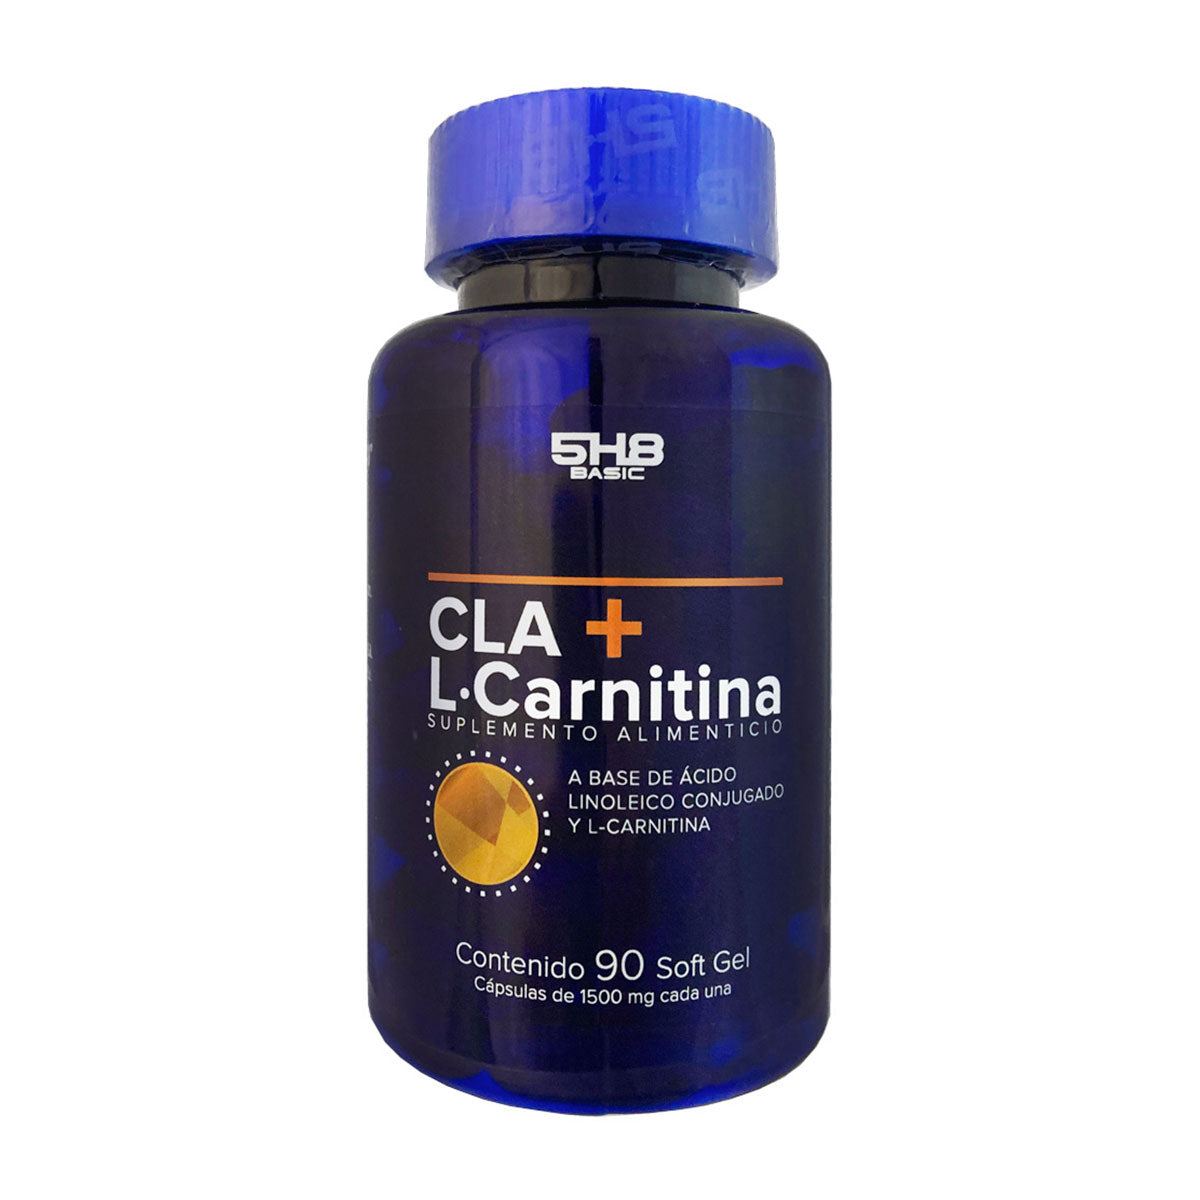 L-CARNITINA + CLA